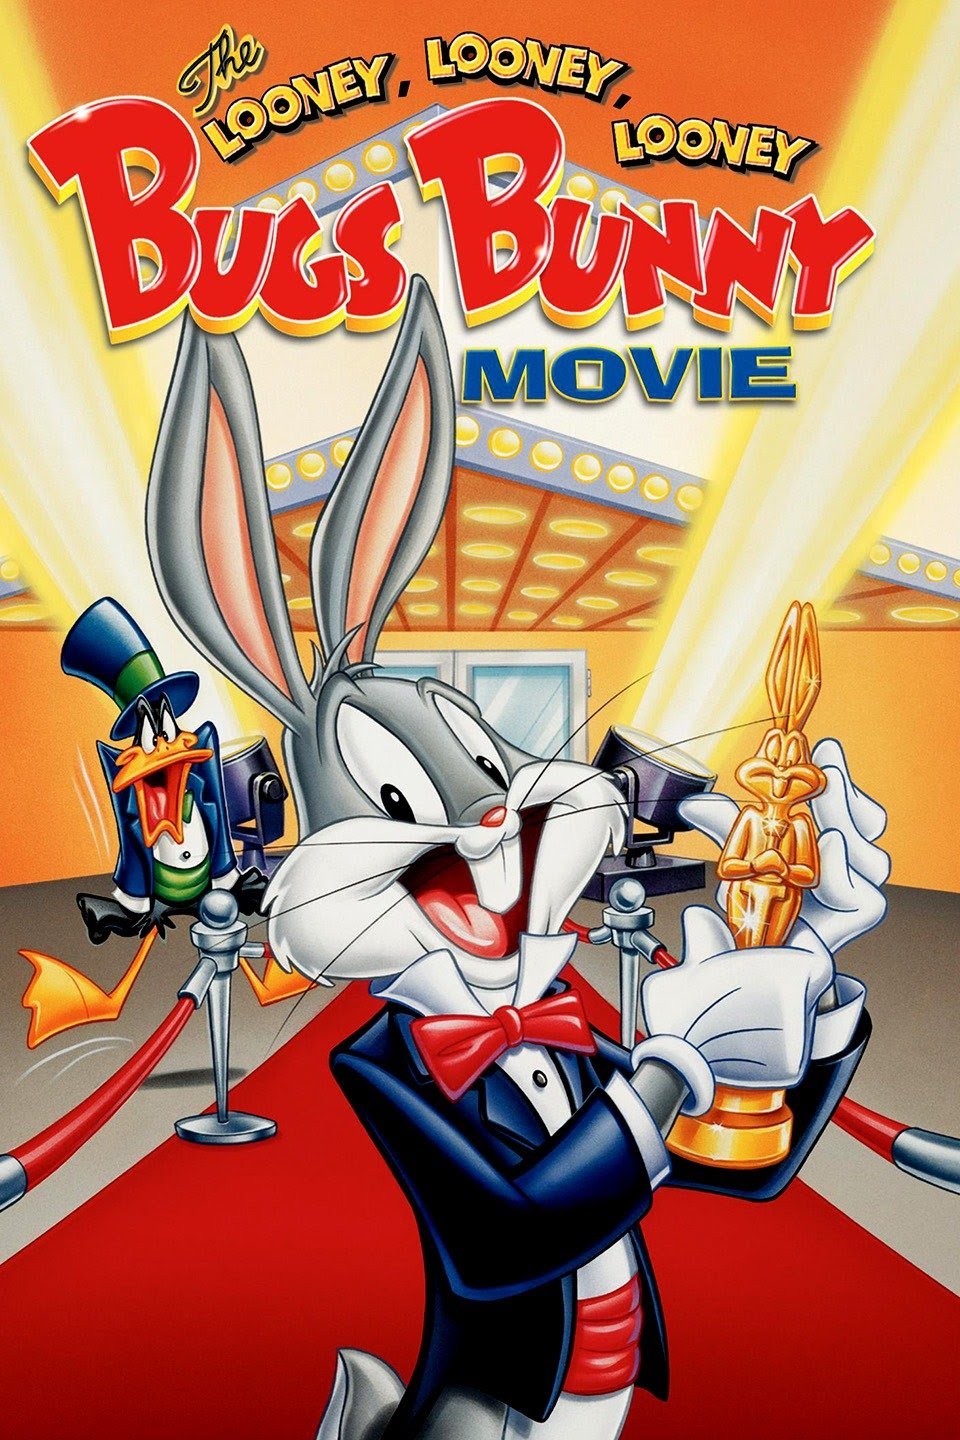 The Looney Looney Looney Bugs Bunny Movie Warner Bros pic